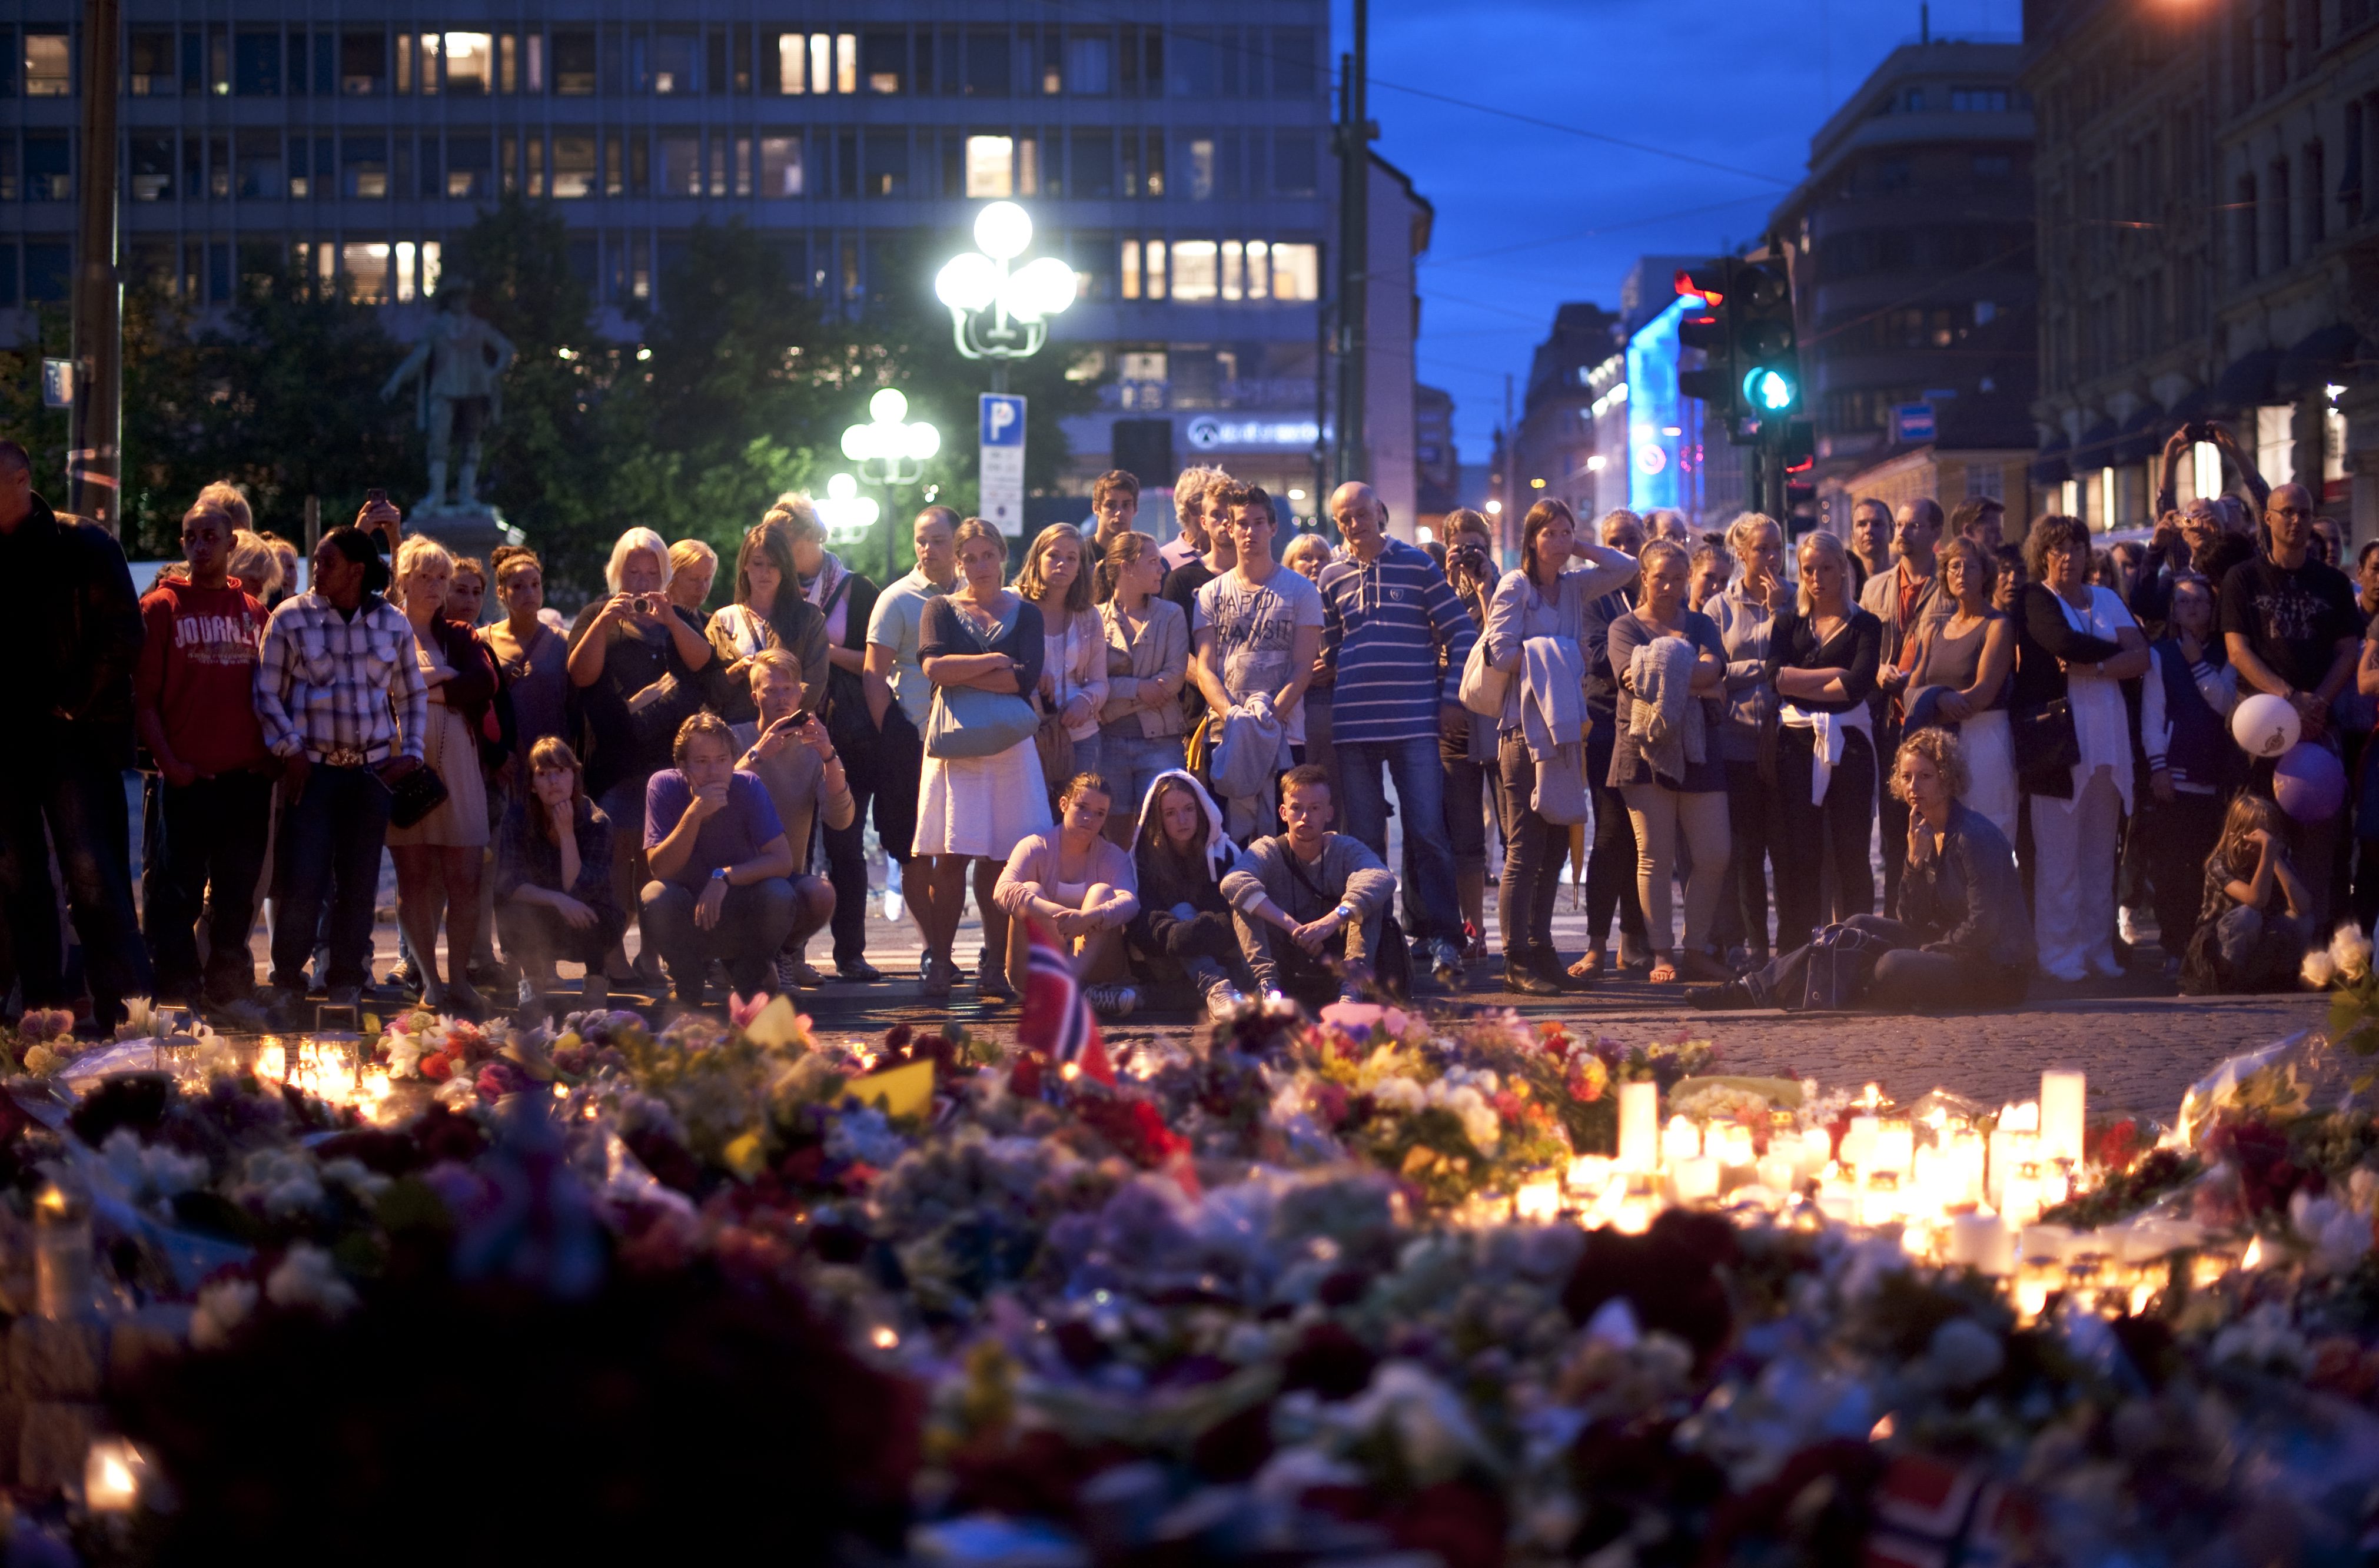 Anders Behring Breivik dödade 77 personer, 22 juli 2011 innan han greps av norsk polis. Hans terroraktion var riktad mot norska Arbeidarpartiet och dess ungdomsförbund AUF. 